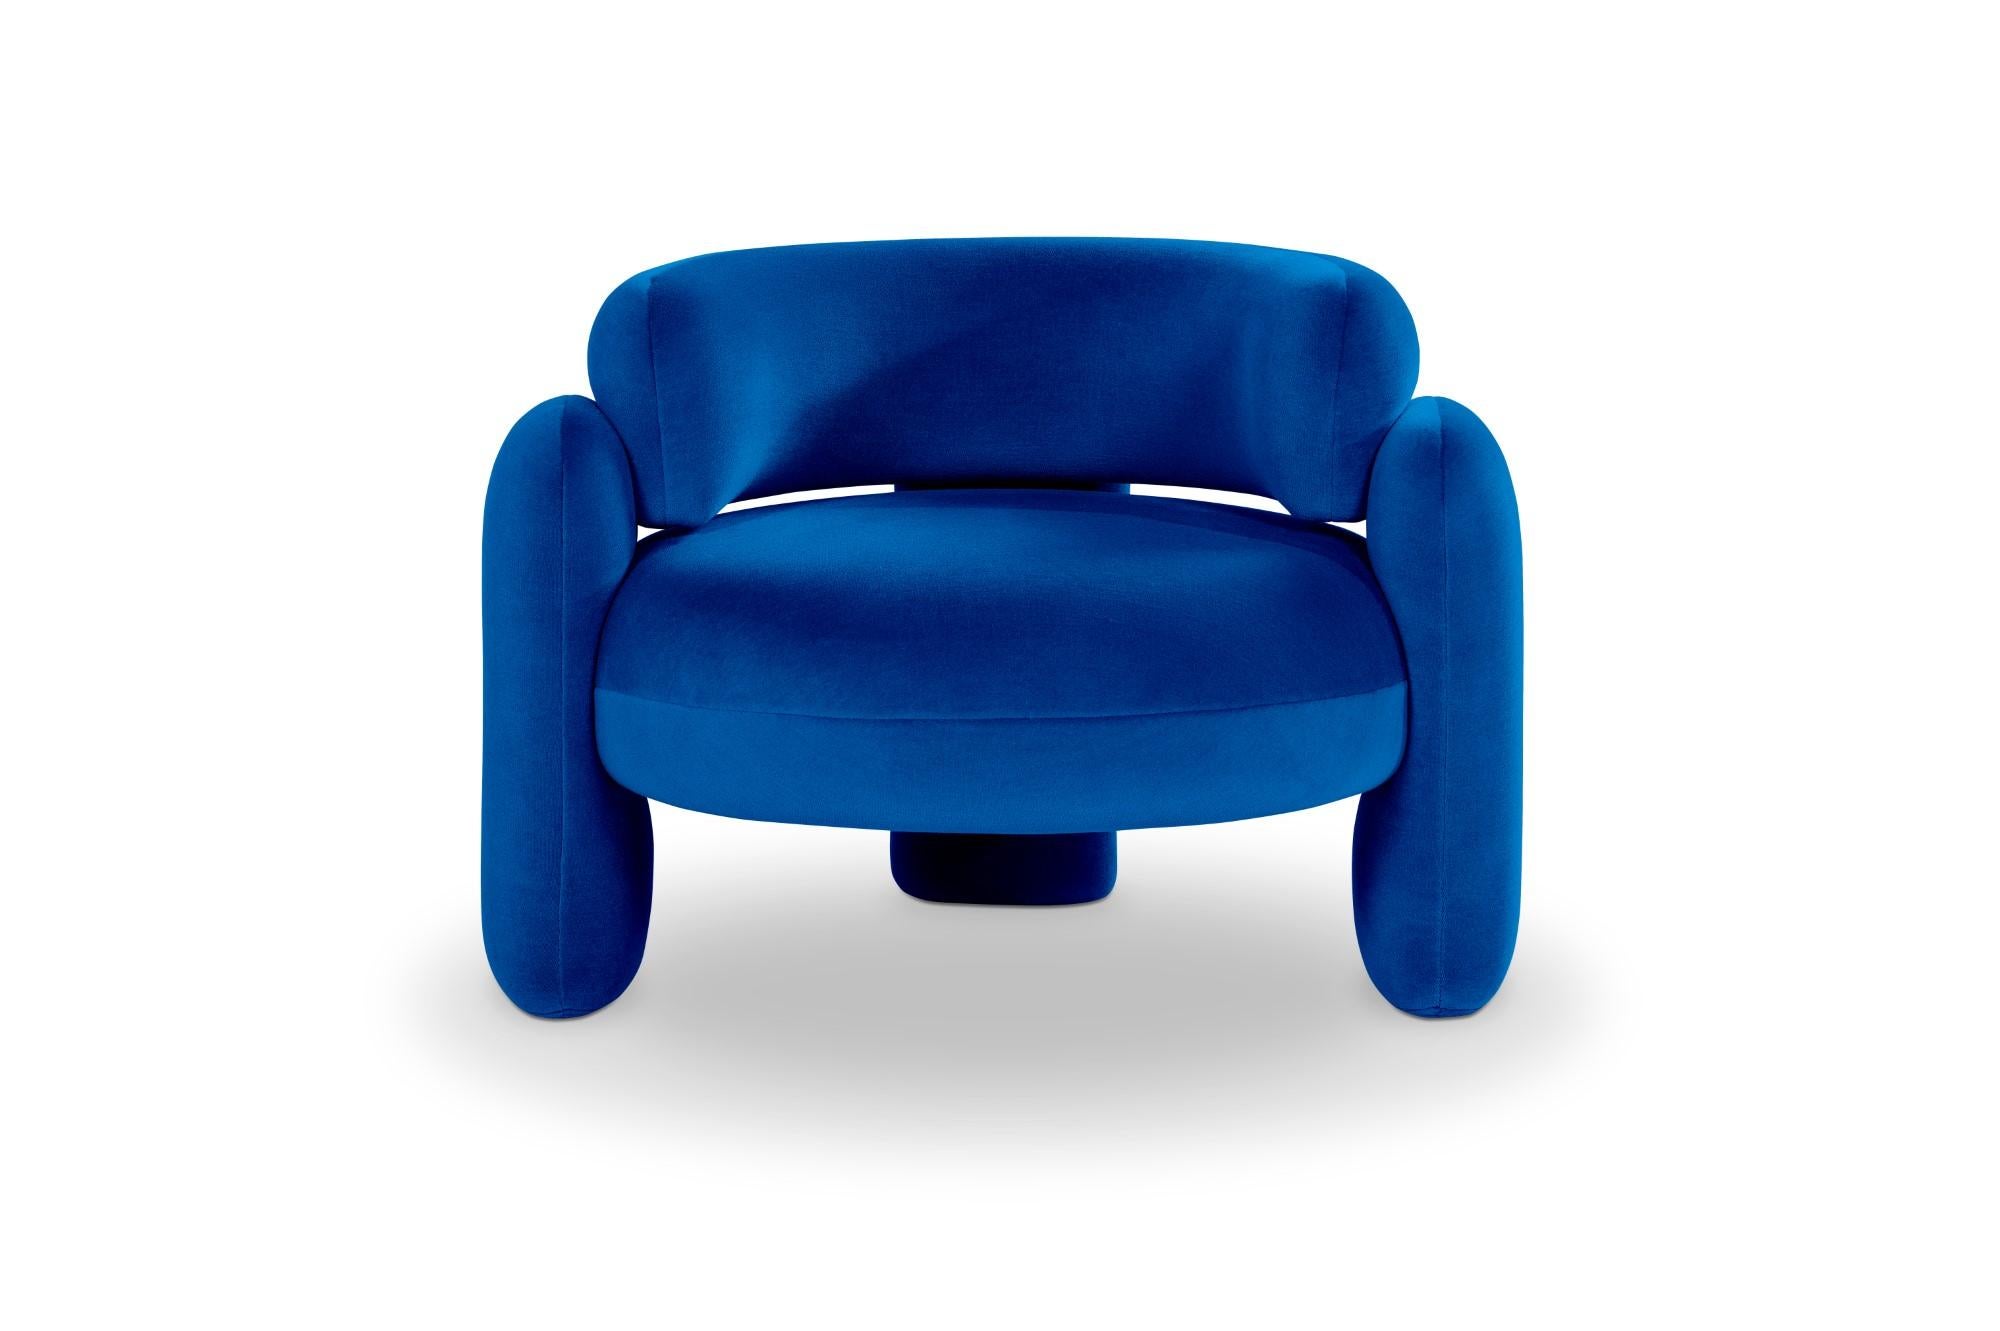 Embrace Gentle 753 Sessel von Royal Stranger 
Abmessungen: B 96 x T 85 x H 68 cm.
Es sind verschiedene Farben und Ausführungen der Polsterung erhältlich. Bitte kontaktieren Sie uns.
MATERIALIEN: Polstermöbel.

Der Embrace Armchair ist eine